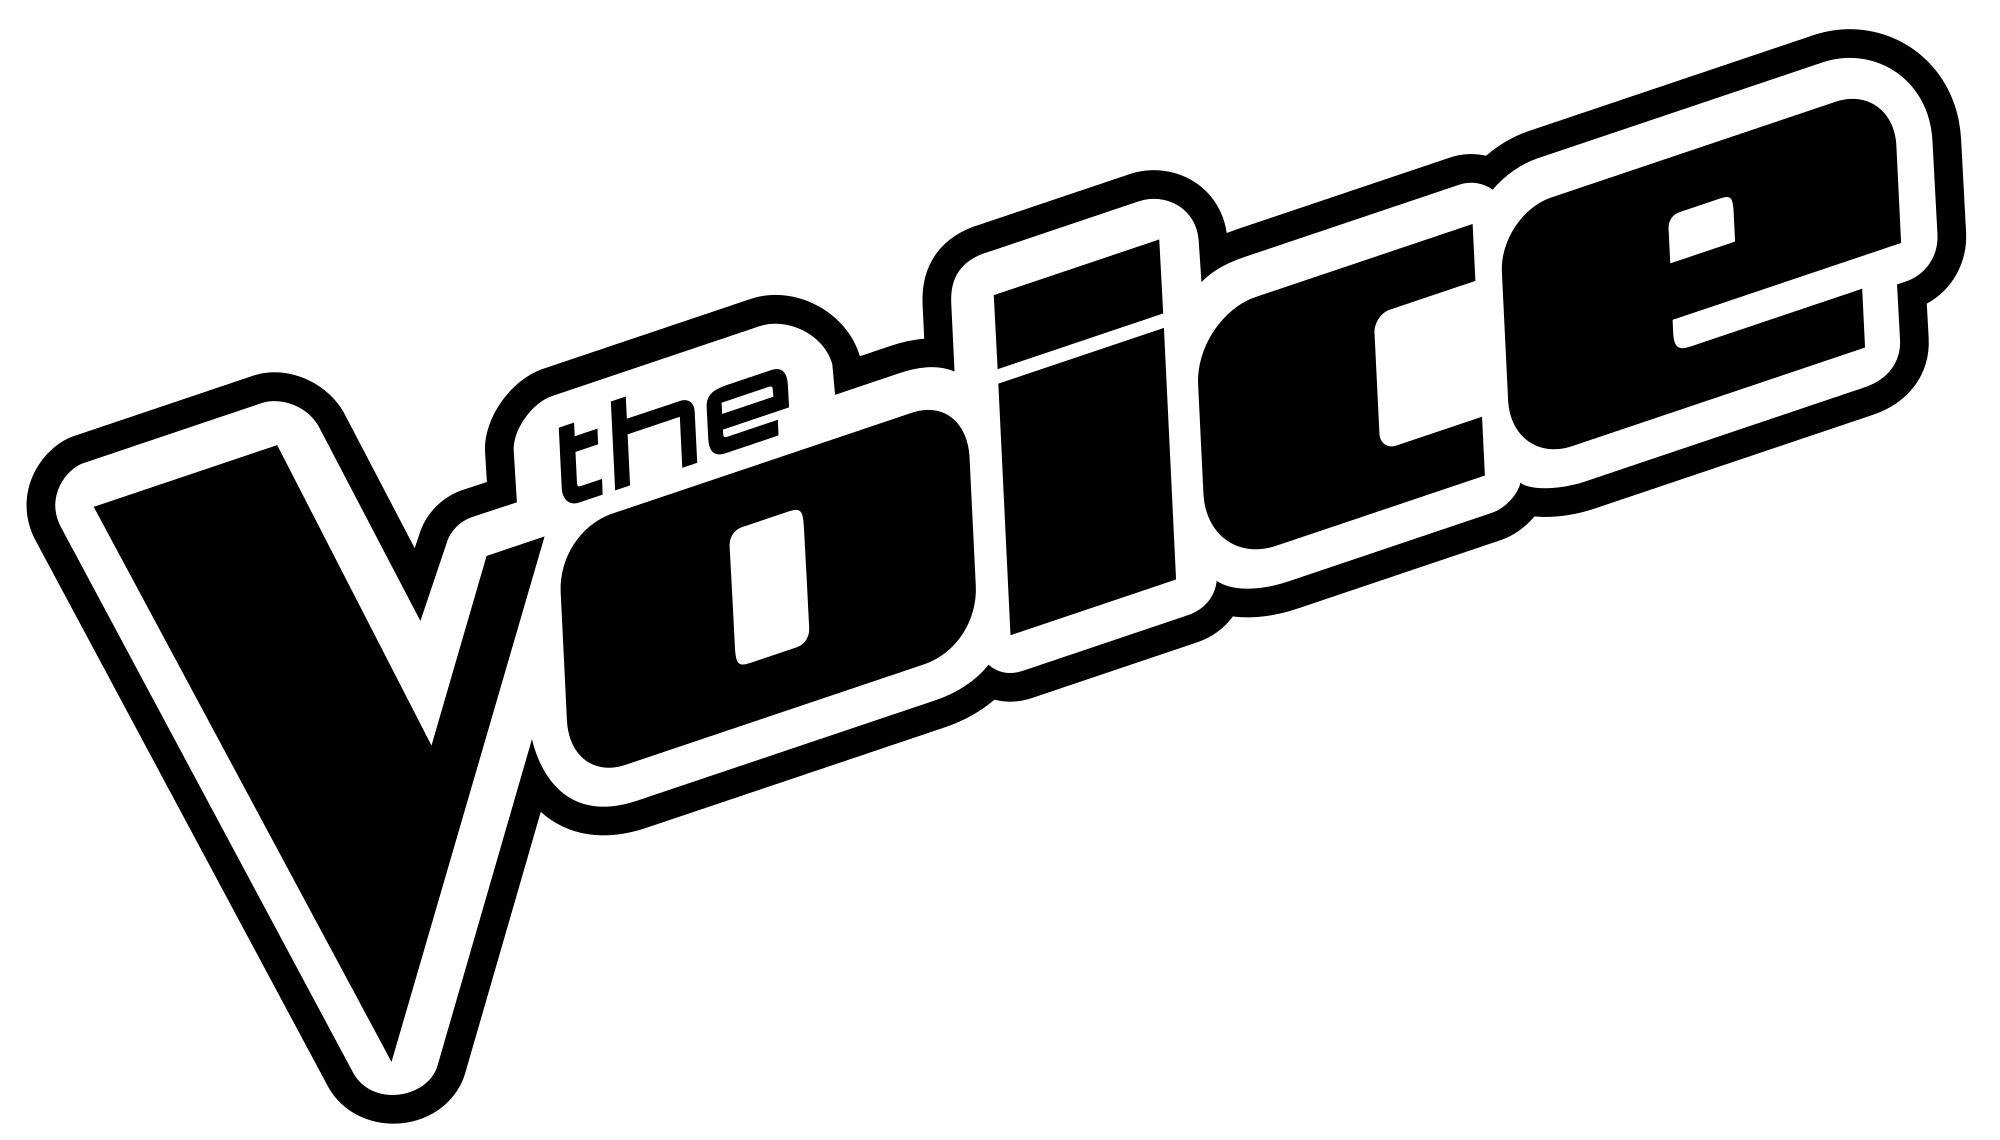 Voice file. Voice логотип. Голос значок шоу. Шоу голос логотип вектор. Шоу голос логотип на прозрачном фоне.